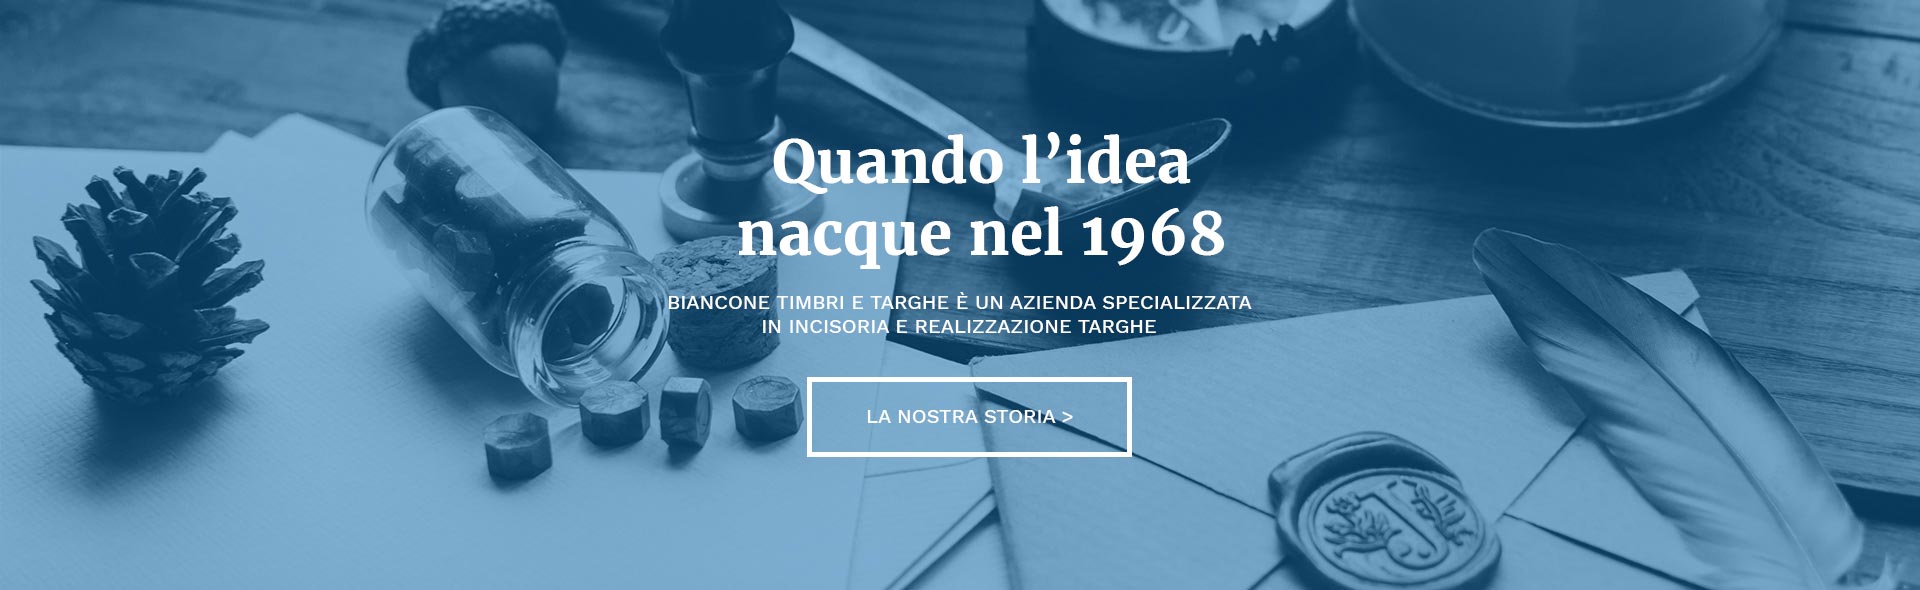 Dal 1968 Biancone timbri e targhe è un azienda specializzata in incisoria e realizzazione targhe